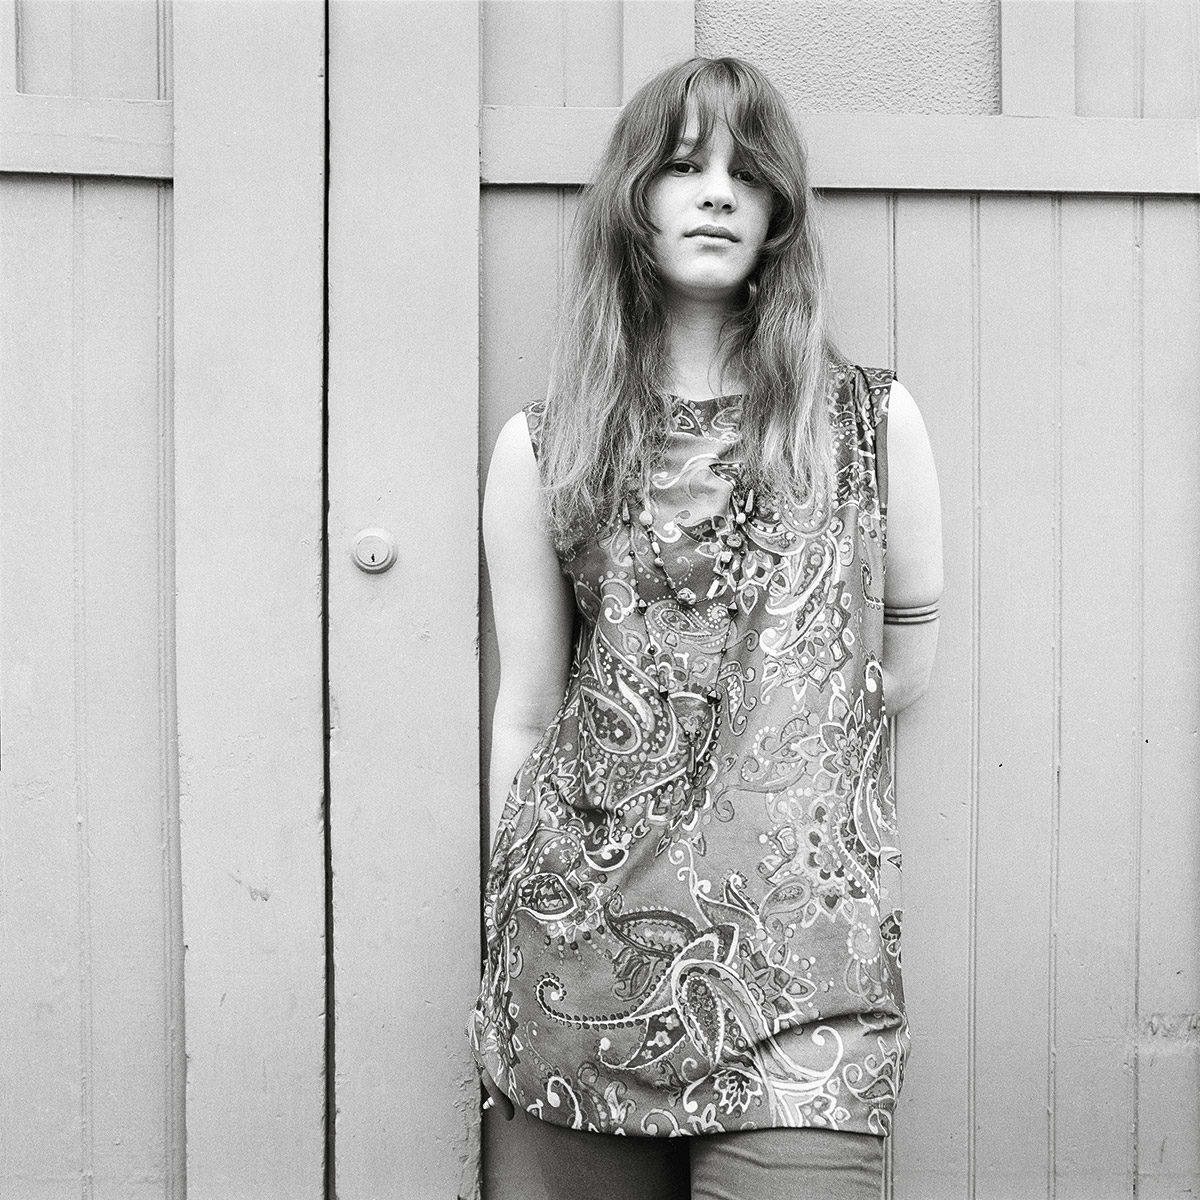 Katrinka Haraden (Trinka), 19, Haight Street, 1968 © Elaine Mayes